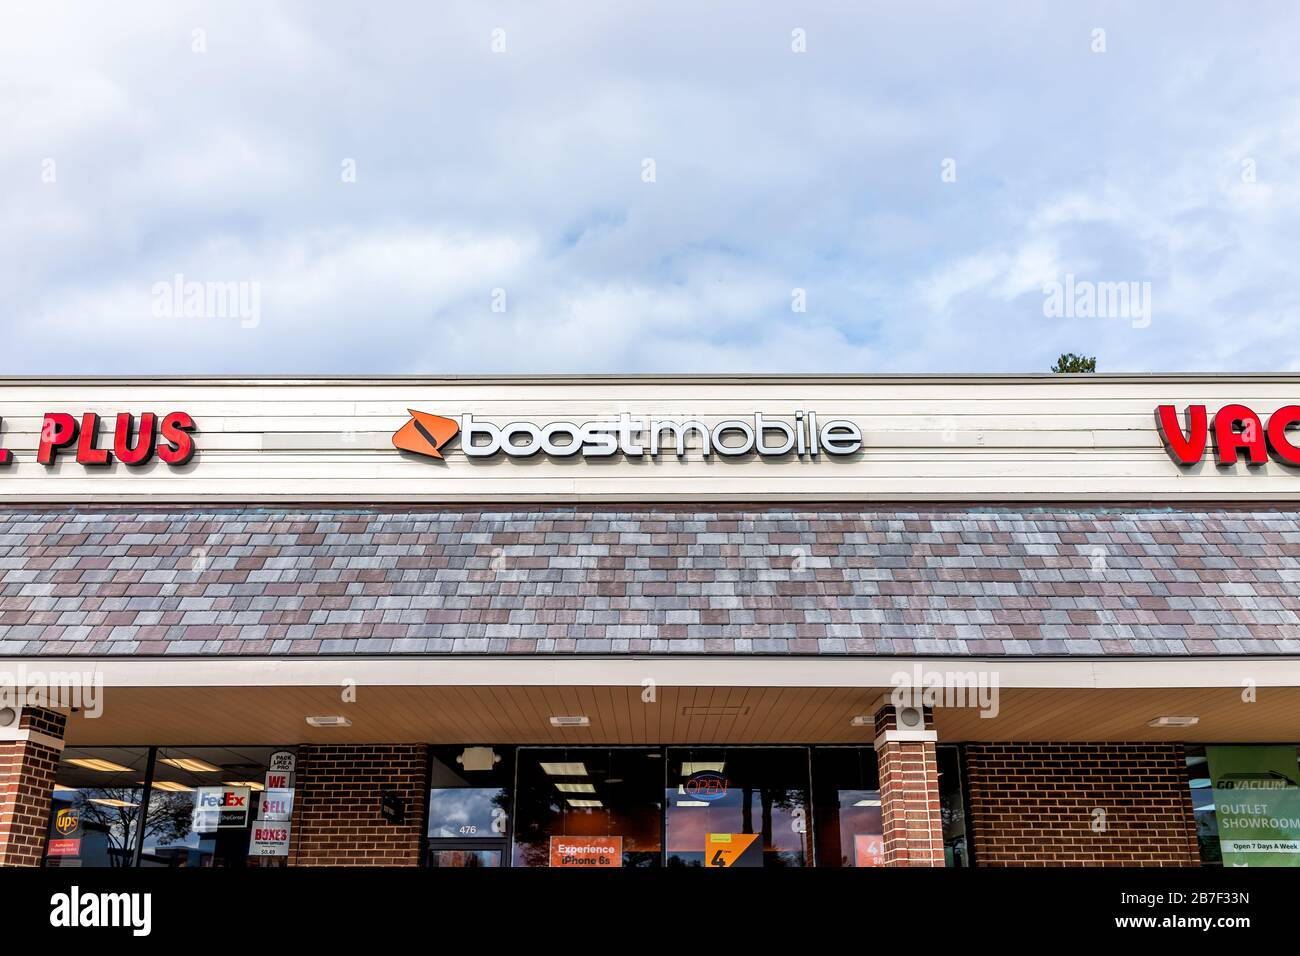 Herndon, USA - 12. November 2019: Außenansicht des Boost Mobile Store auf der Straße in Virginia Fairfax County mit Schild und Eingang Stockfoto